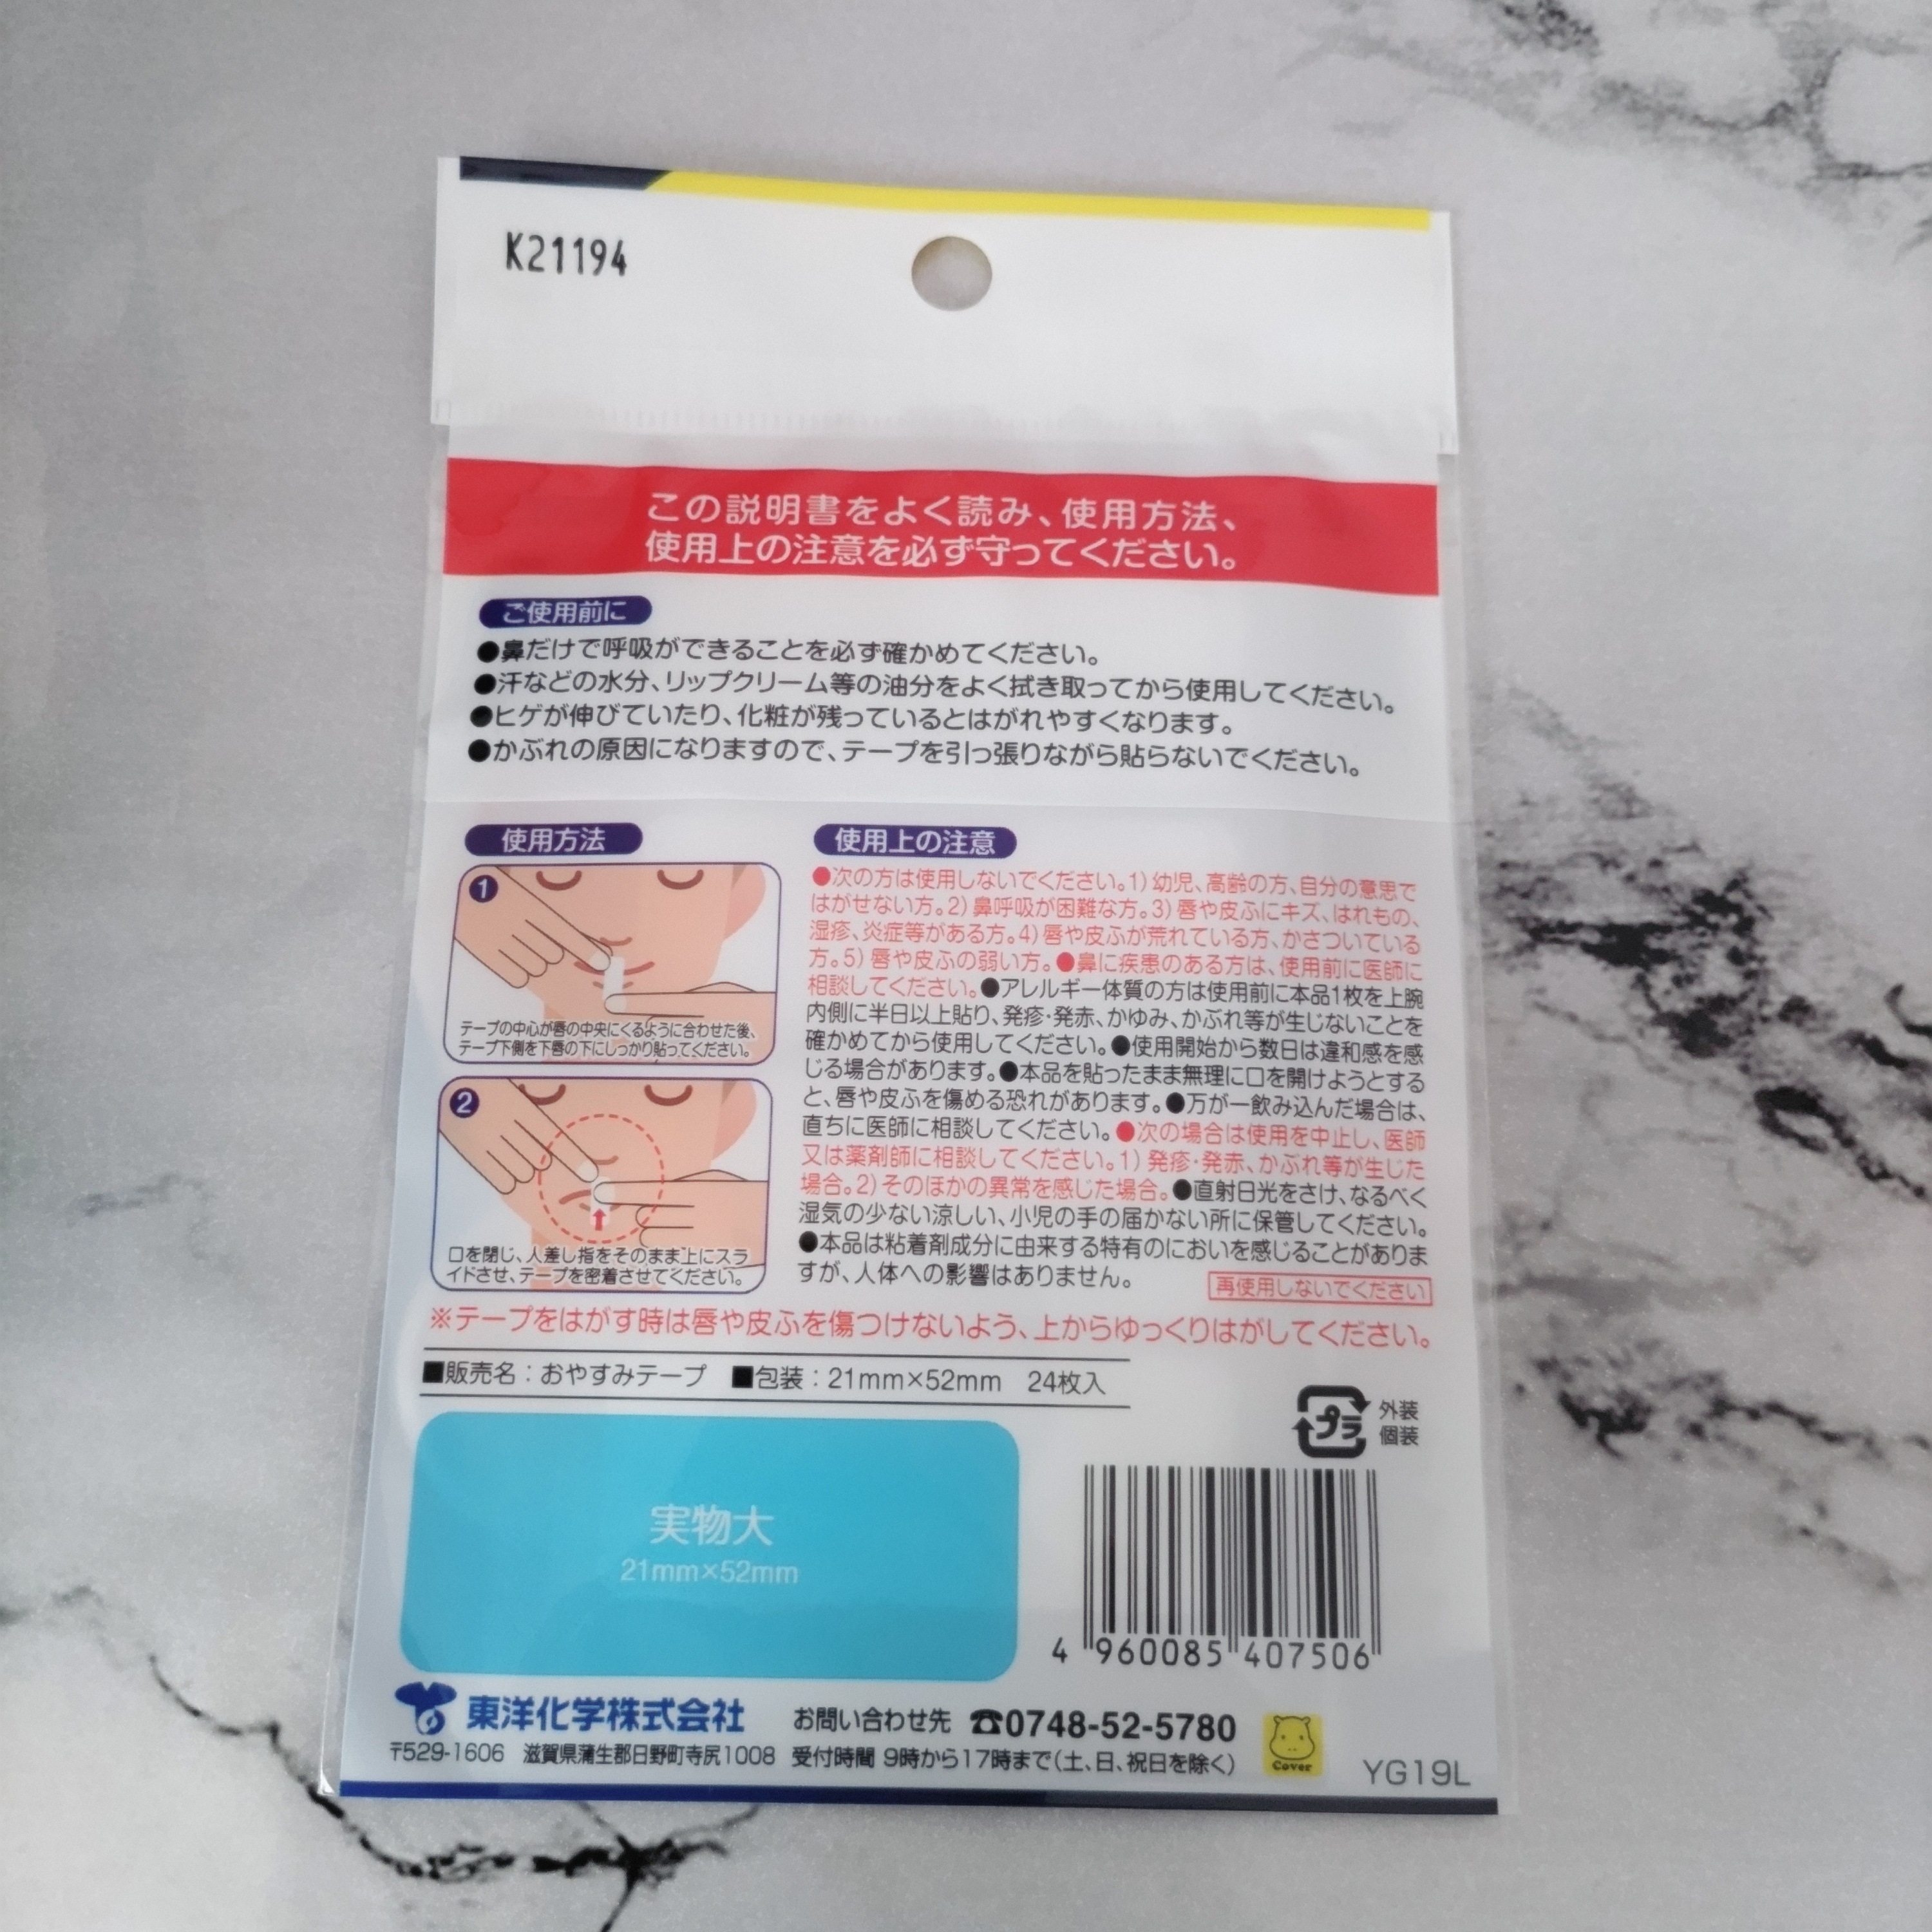 東洋化学株式会社　カバがCOVER! おやすみテープ 24枚入を使ったYuKaRi♡さんのクチコミ画像2